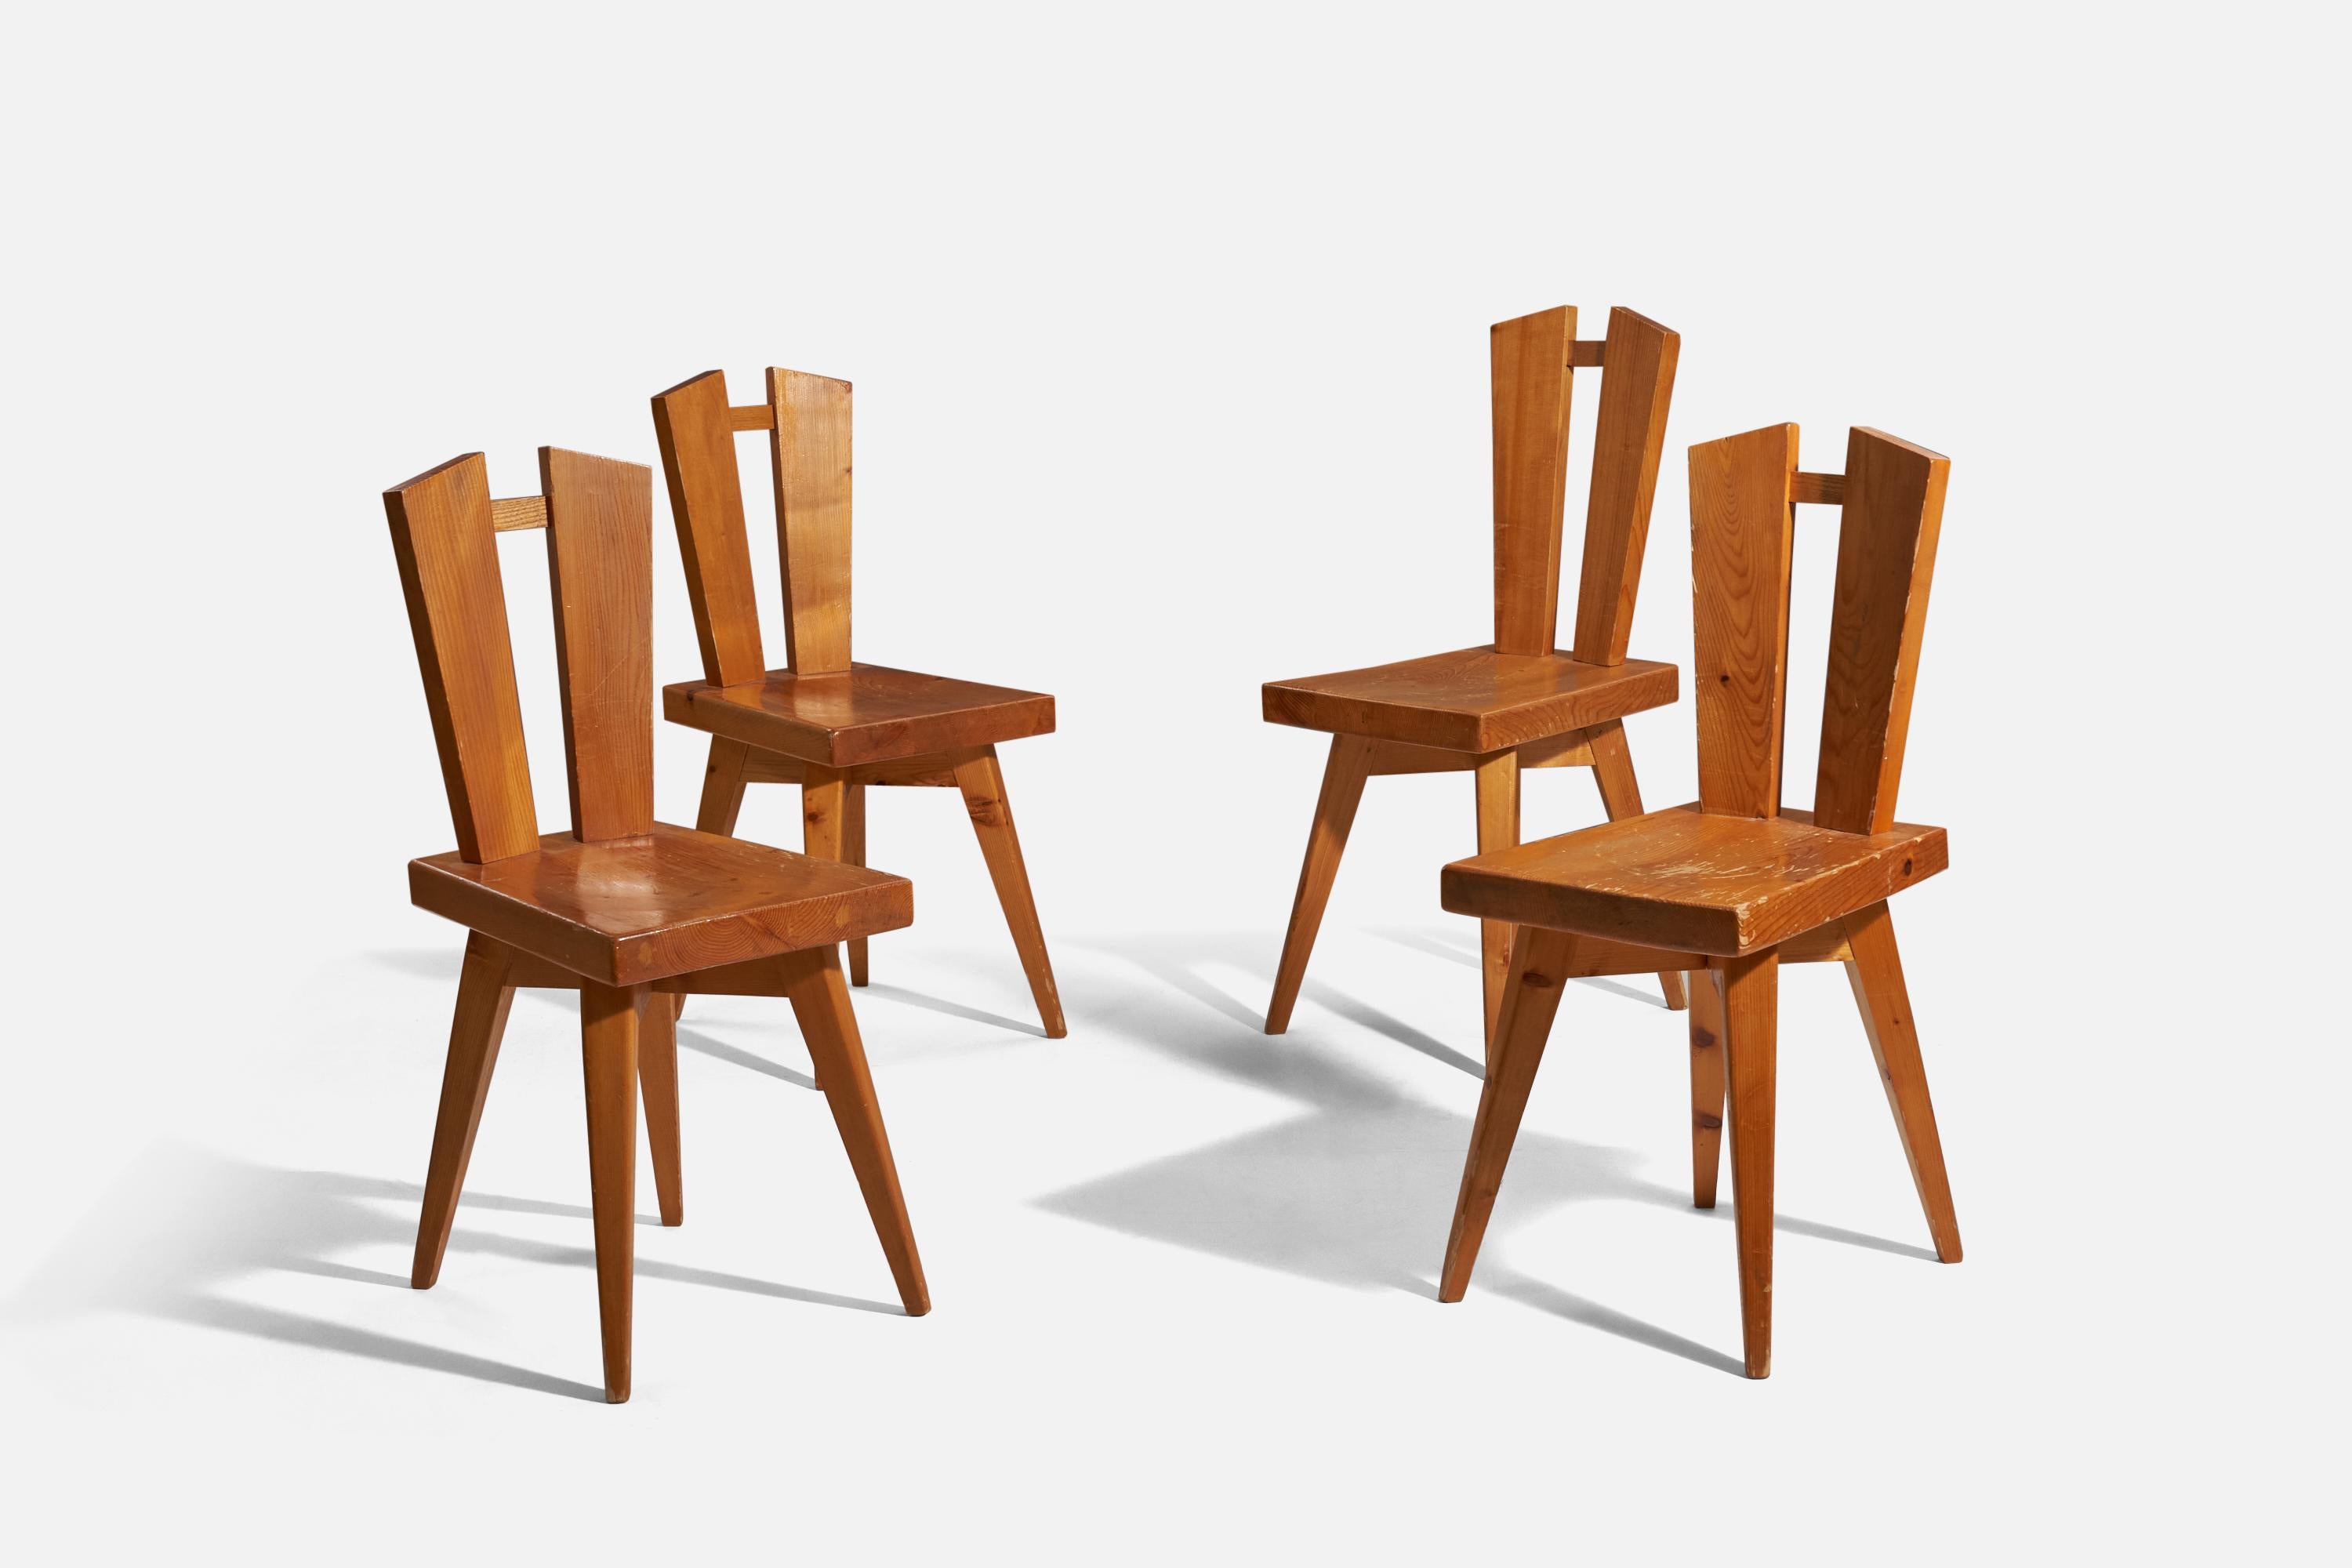 Esszimmerstühle aus Kiefernholz, entworfen von Christian Durupt, für Charlotte Perriand, Frankreich, 1960er Jahre.

Bitte beachten Sie, dass ein Stuhl etwas höher ist als die anderen drei.